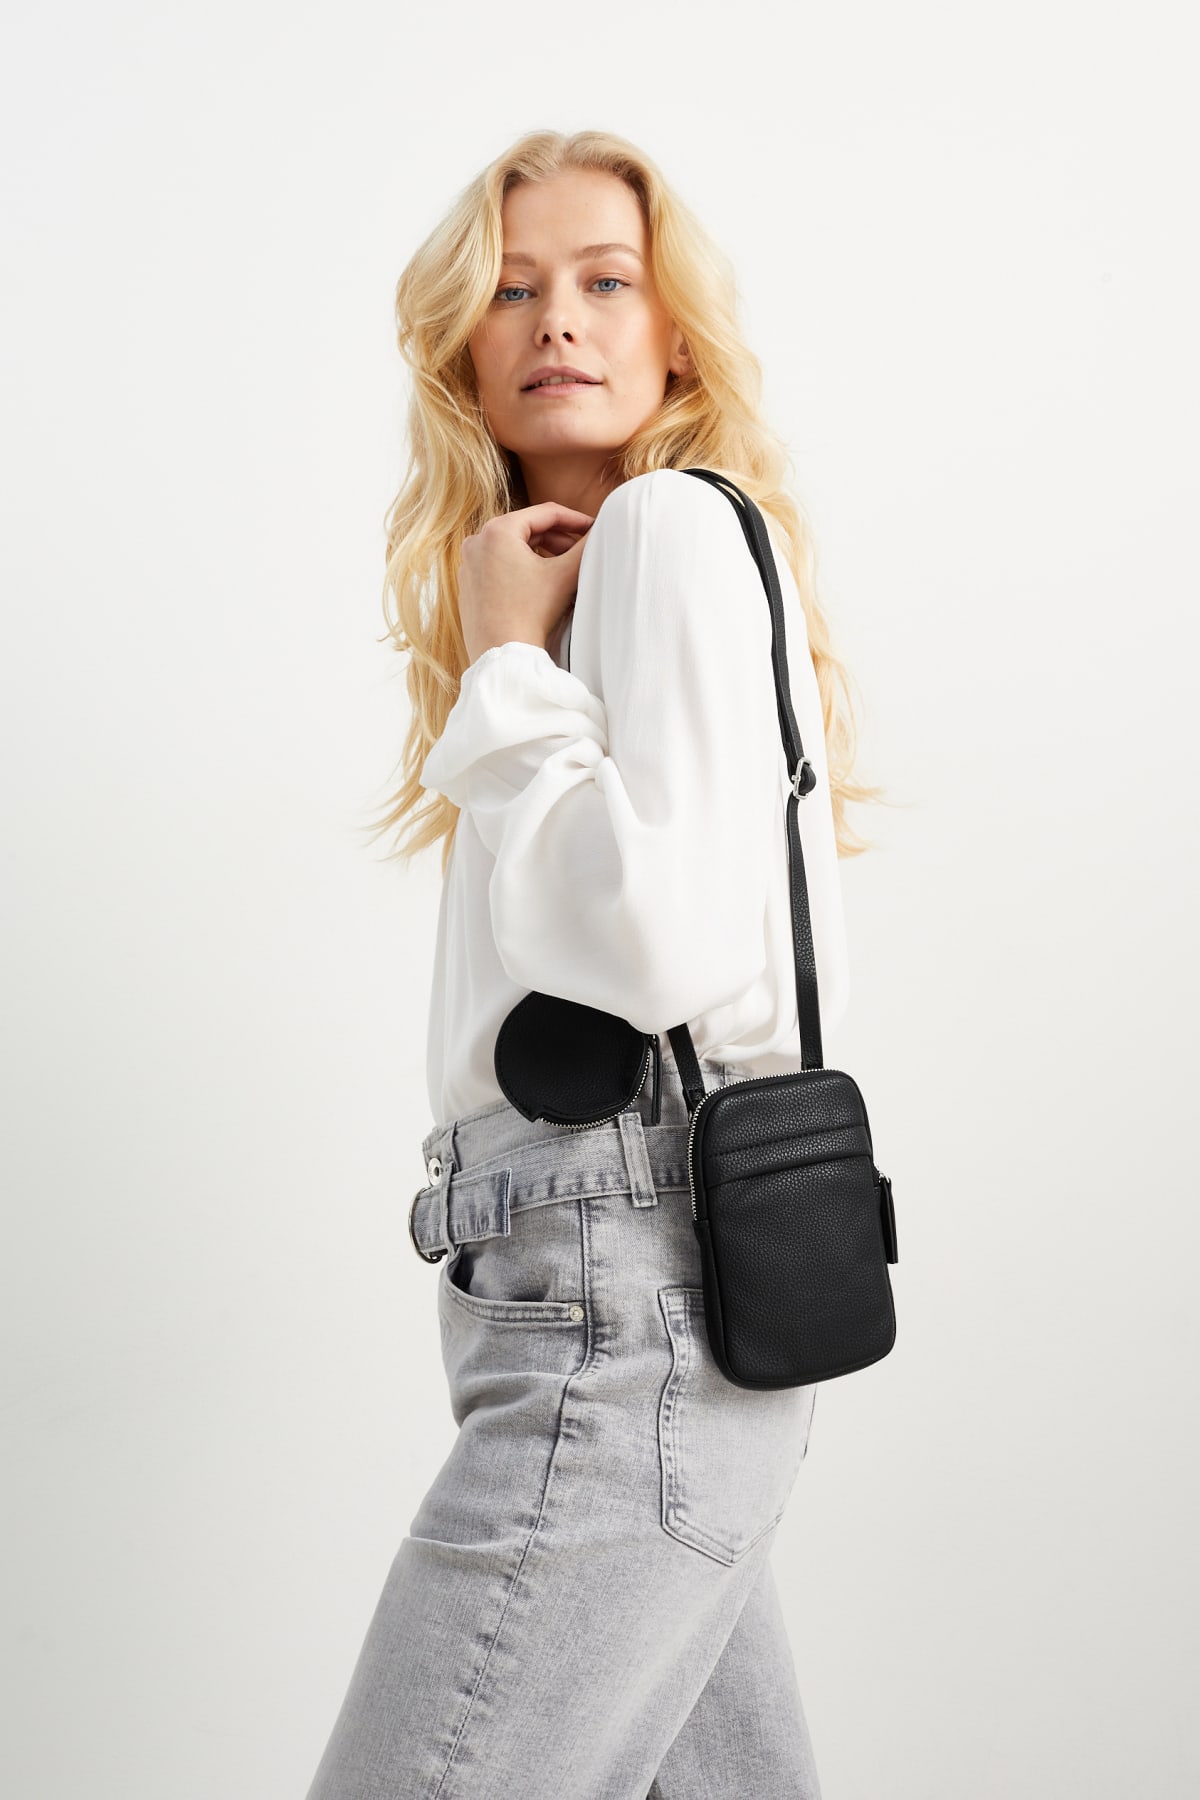 Acheter Mini sac taille fine 2 en 1, ceinture, porte-monnaie pour femme